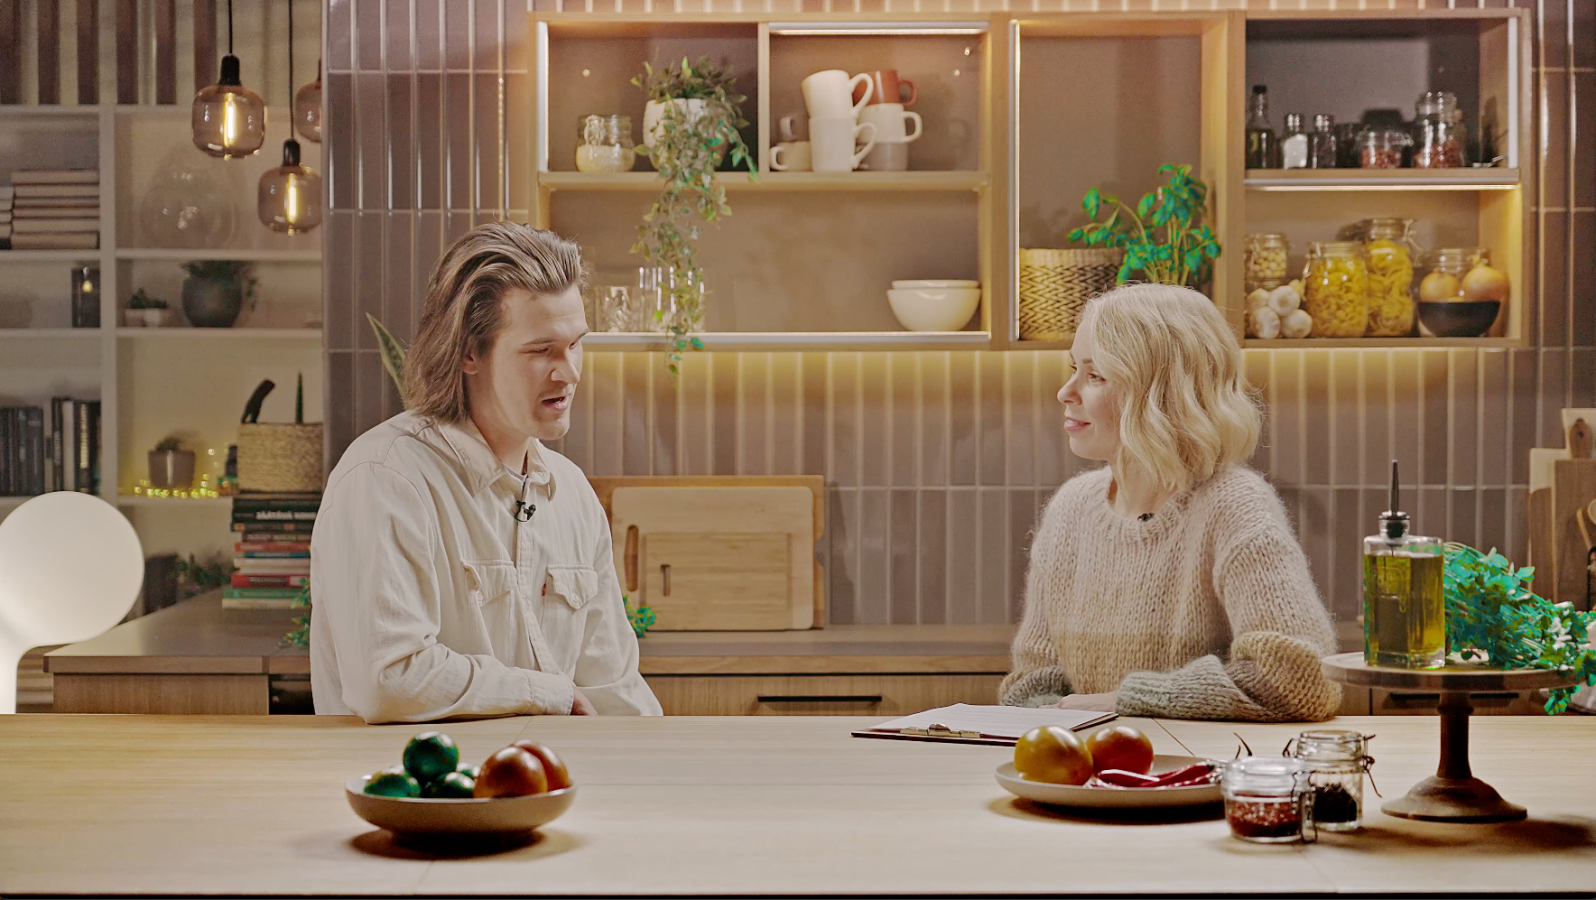 Eetu Patronen Ässästudion keittiössä toimittaja Minna Perovuon haastateltavana. Pöydällä hedelmiä. Taustalla hyllyjä, joissa muun muassa kahvikuppeja, kippoja, mausteita ja lasipurnukoita.